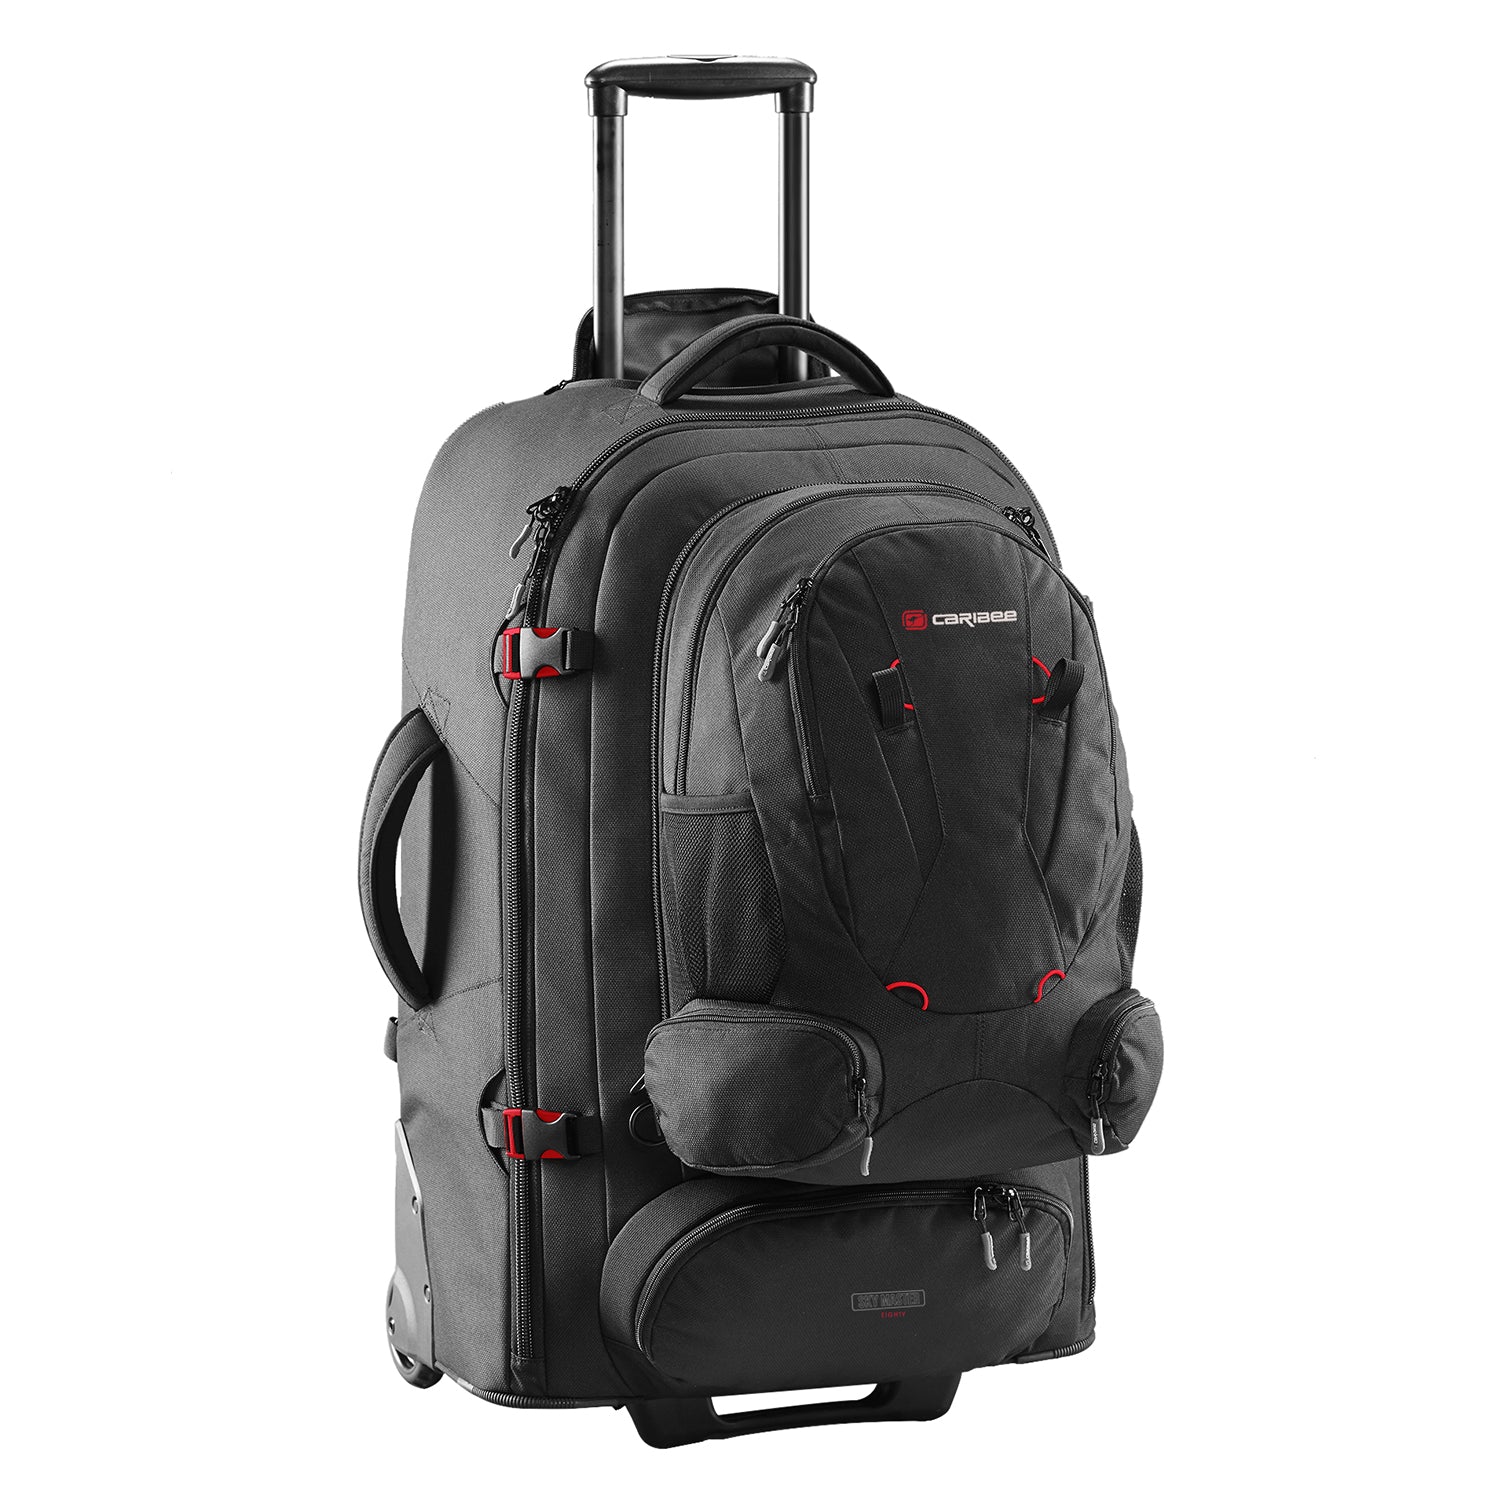 Caribee Sky Master 80L III wheel travel backpack